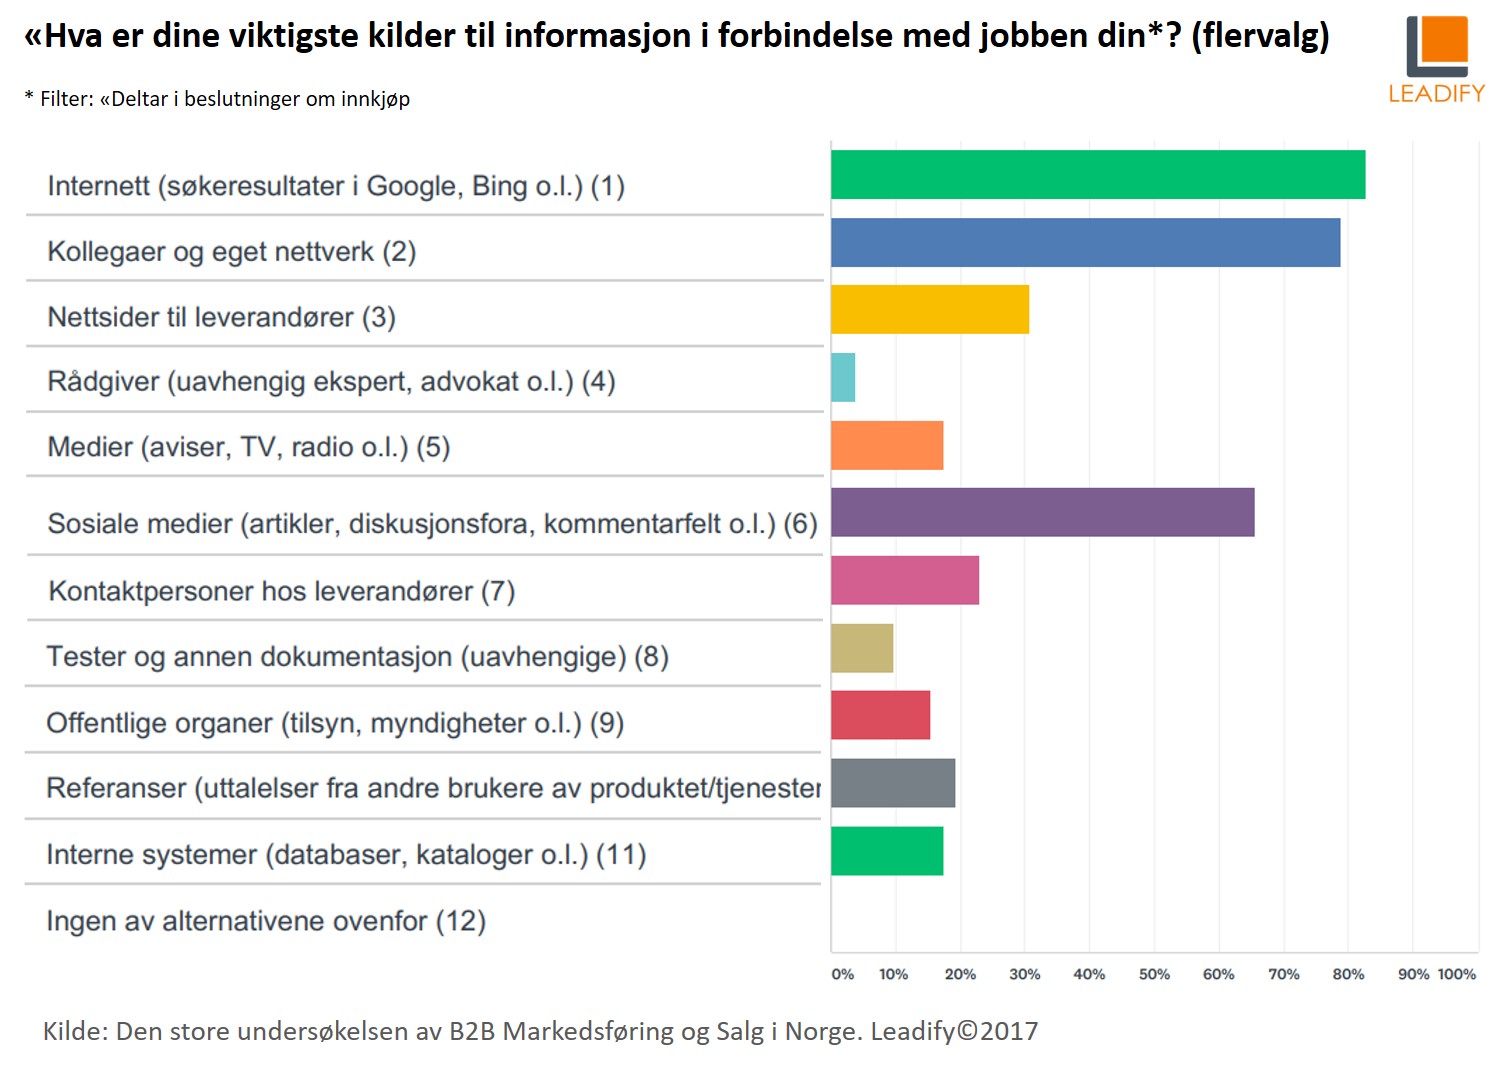 Den store undersøkelsen av B2B markedsføring og salg i Norge 2017_infokilder